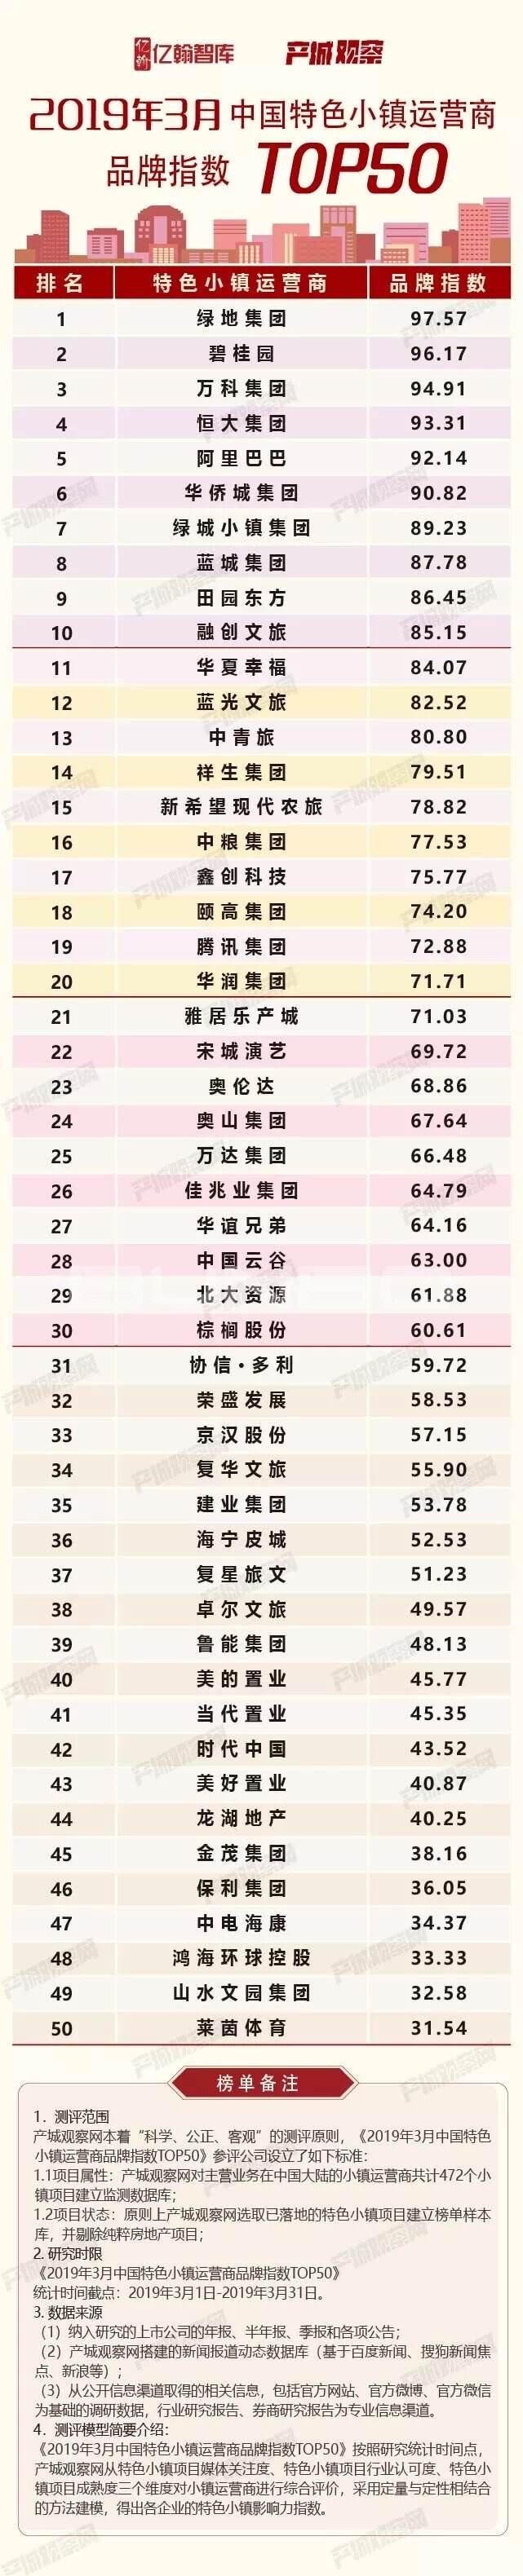 2019年3月中国特色小镇运营商品牌指数TOP50